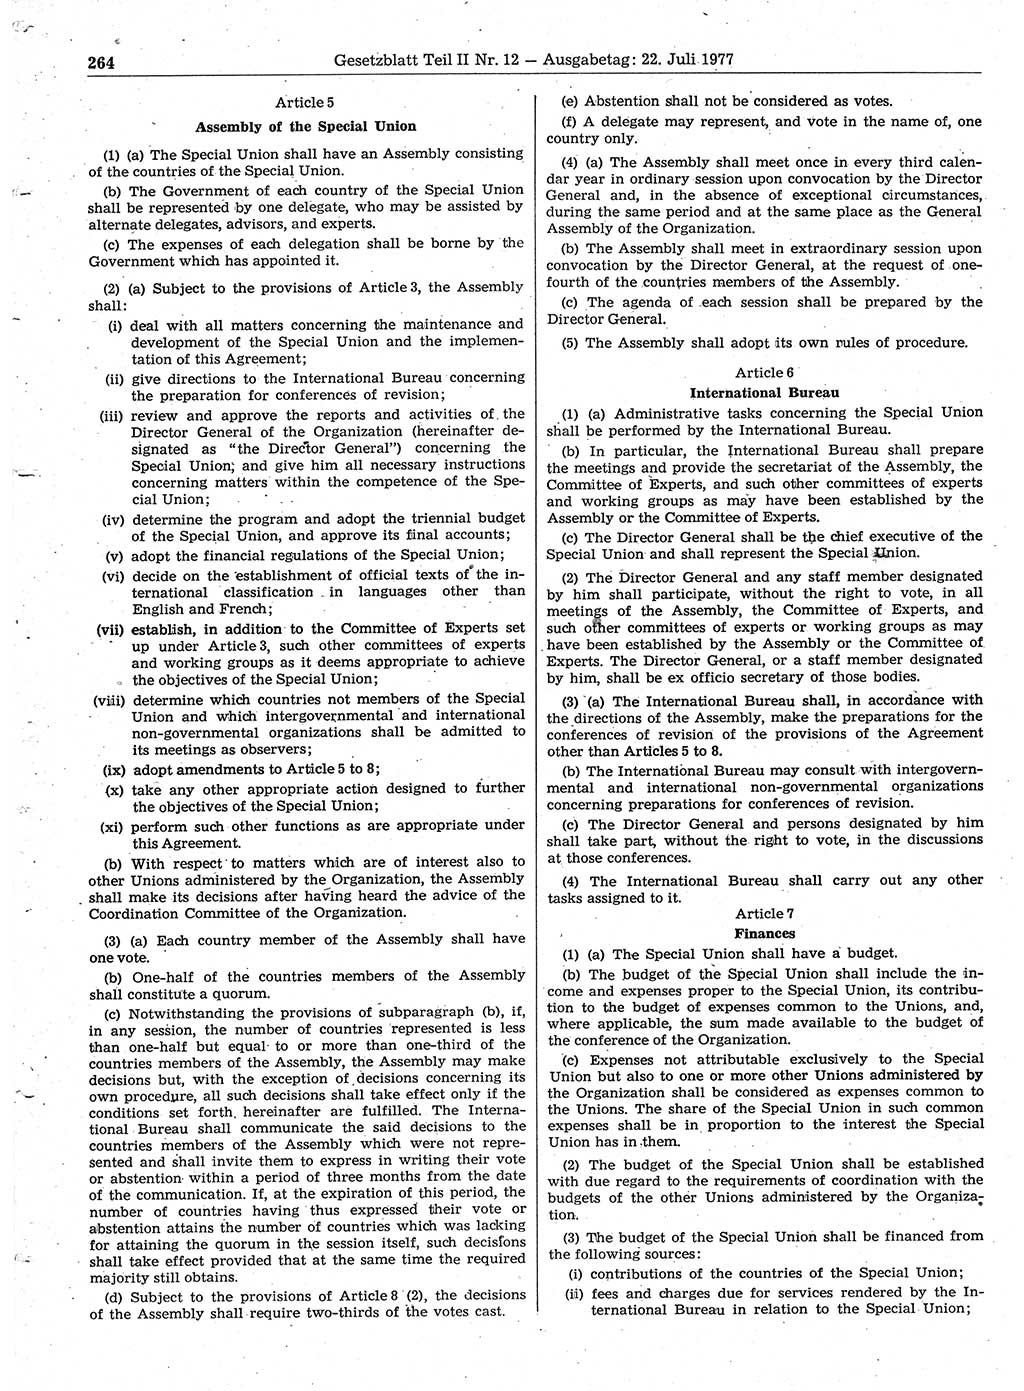 Gesetzblatt (GBl.) der Deutschen Demokratischen Republik (DDR) Teil ⅠⅠ 1977, Seite 264 (GBl. DDR ⅠⅠ 1977, S. 264)